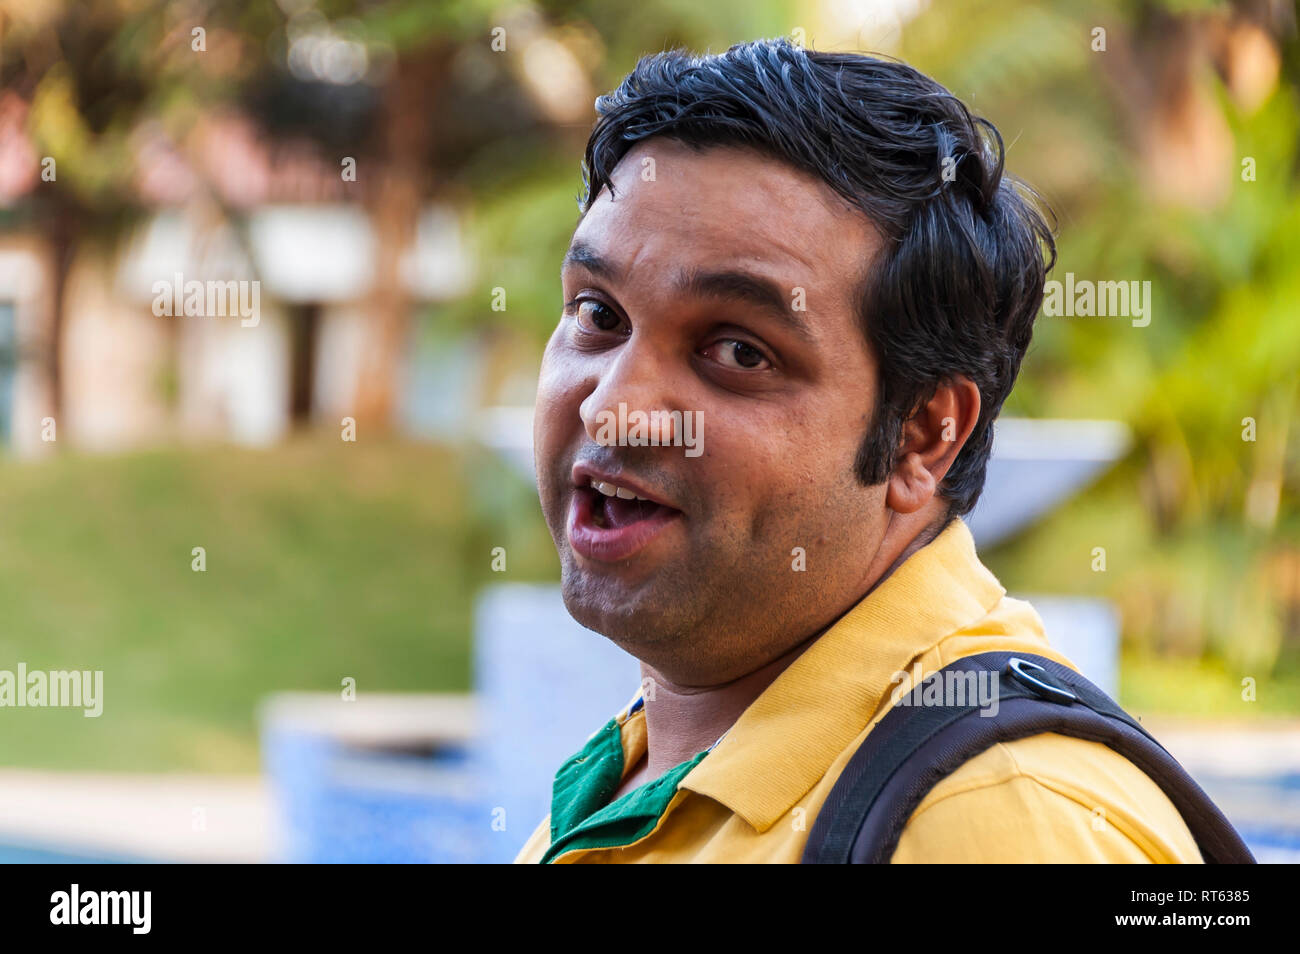 Überrascht! Ein Porträt von einem lächelnden und freundlichen Inder, überrascht, fotografiert werden, wodurch ein Gesicht in die Kamera. Stockfoto